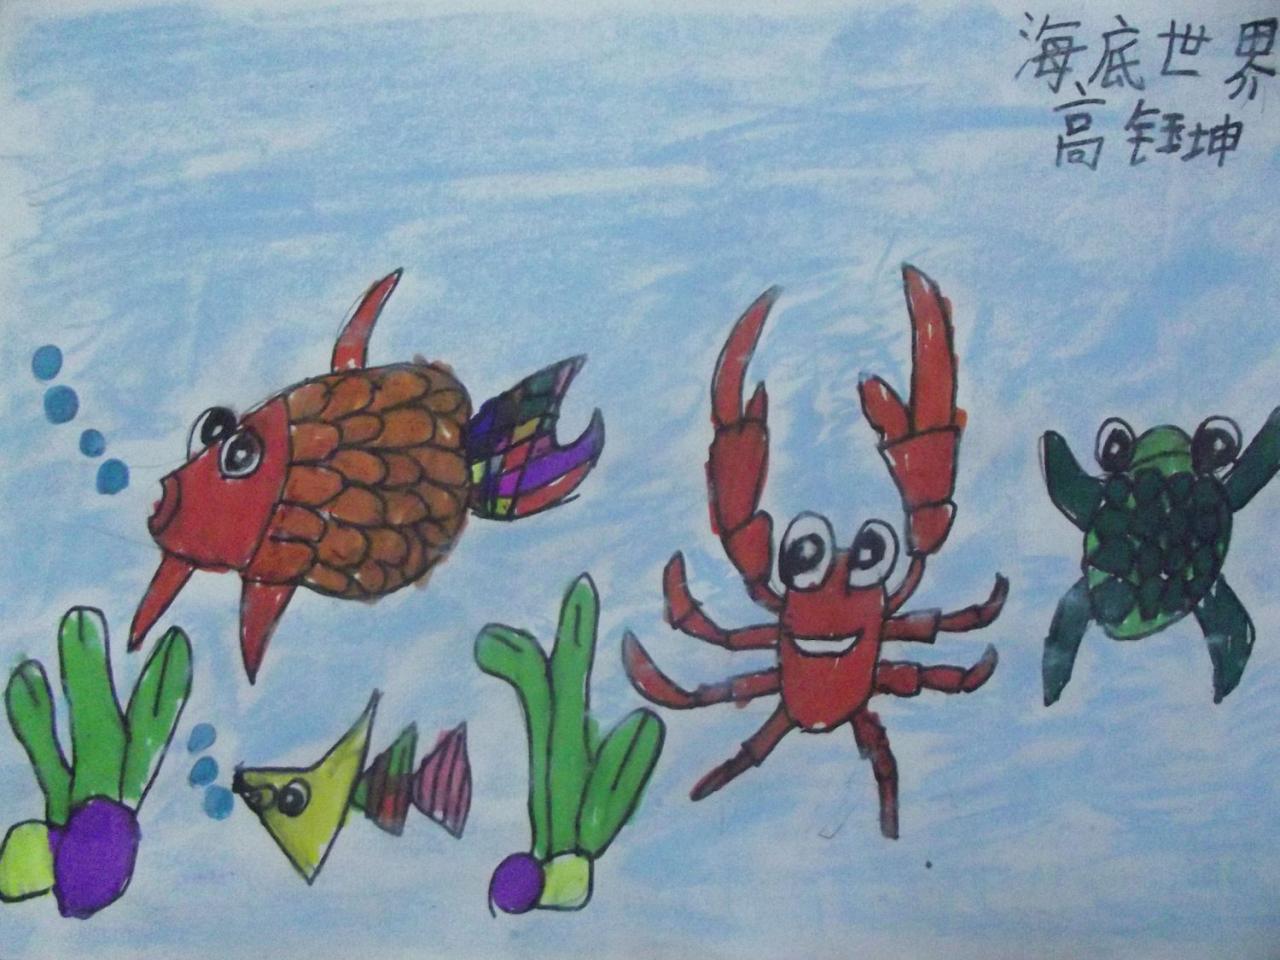 海底世界·热带鱼、螃蟹和乌龟 高钰坤画